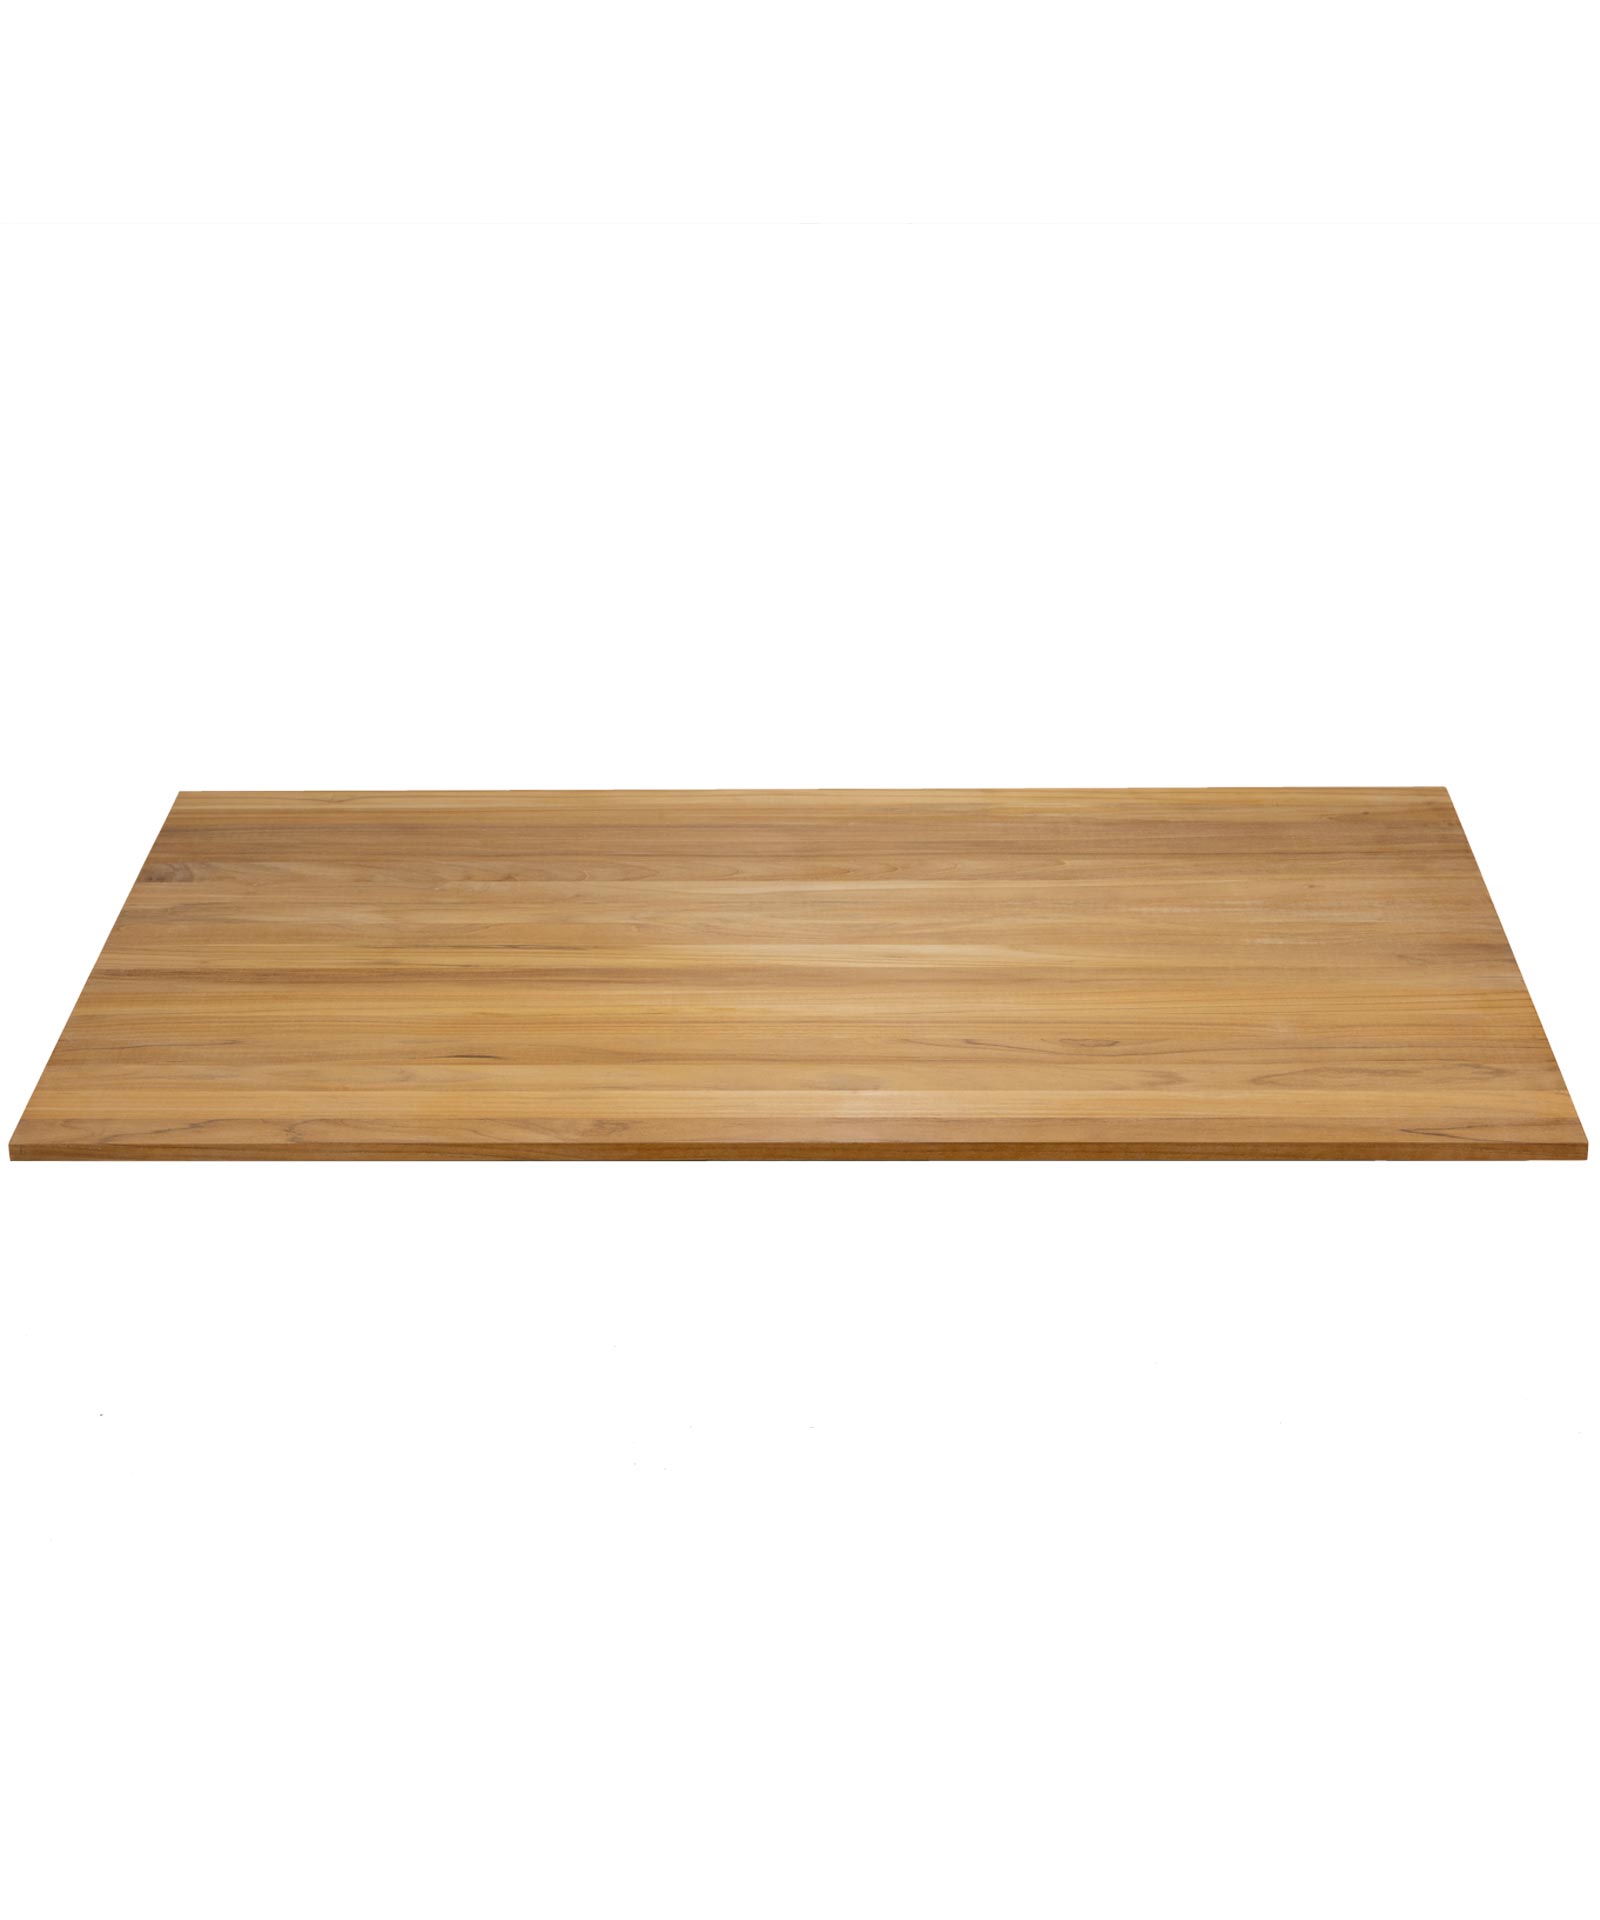 4 tableros de madera de teca con medidas de 1/2 x 2 x 20.5 pulgadas.